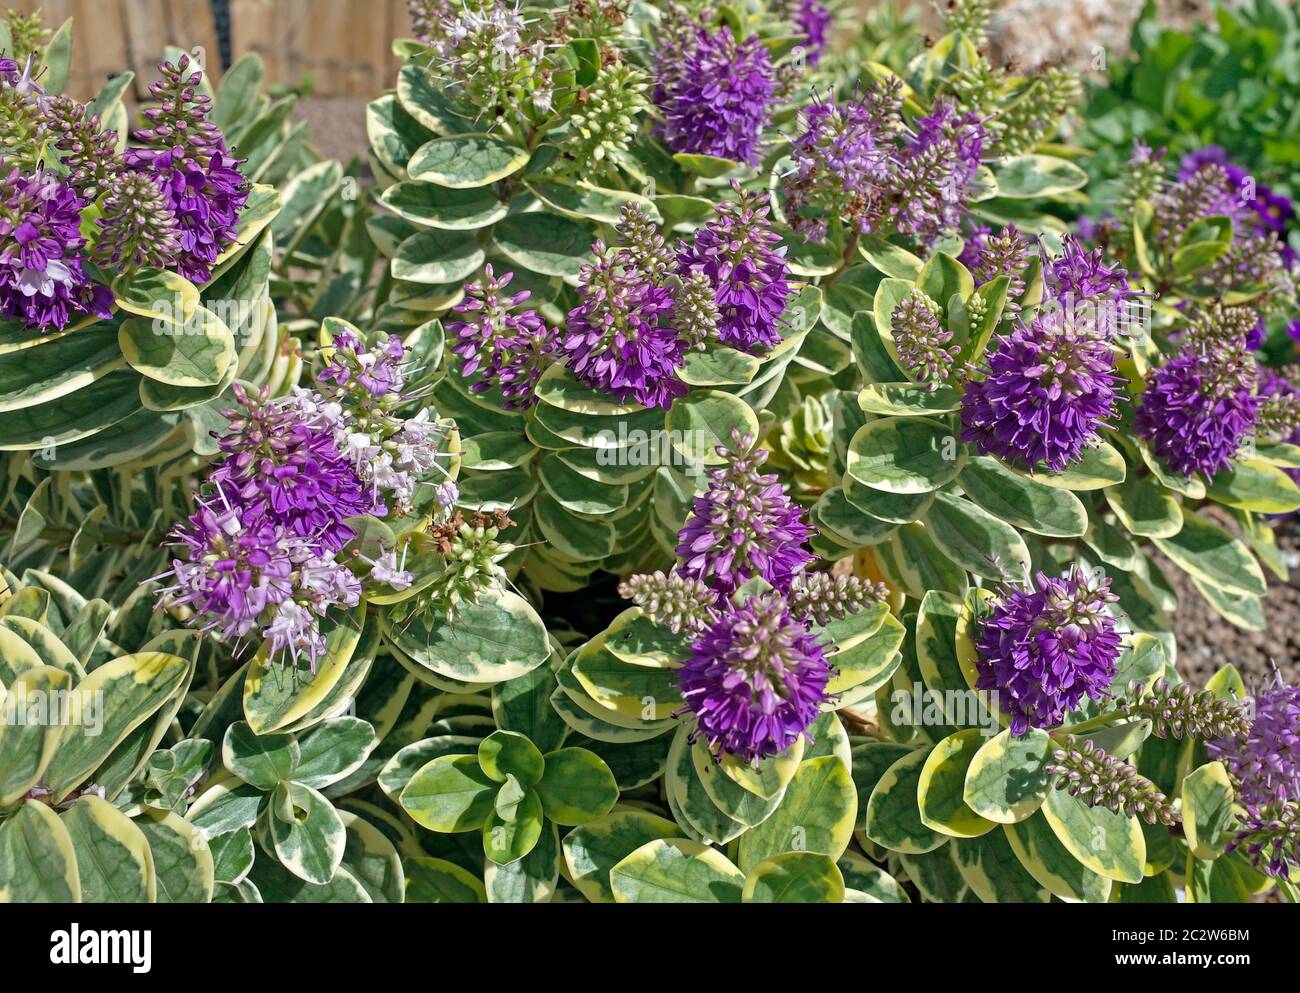 Hebe veronica flowering in Sardinian garden Stock Photo